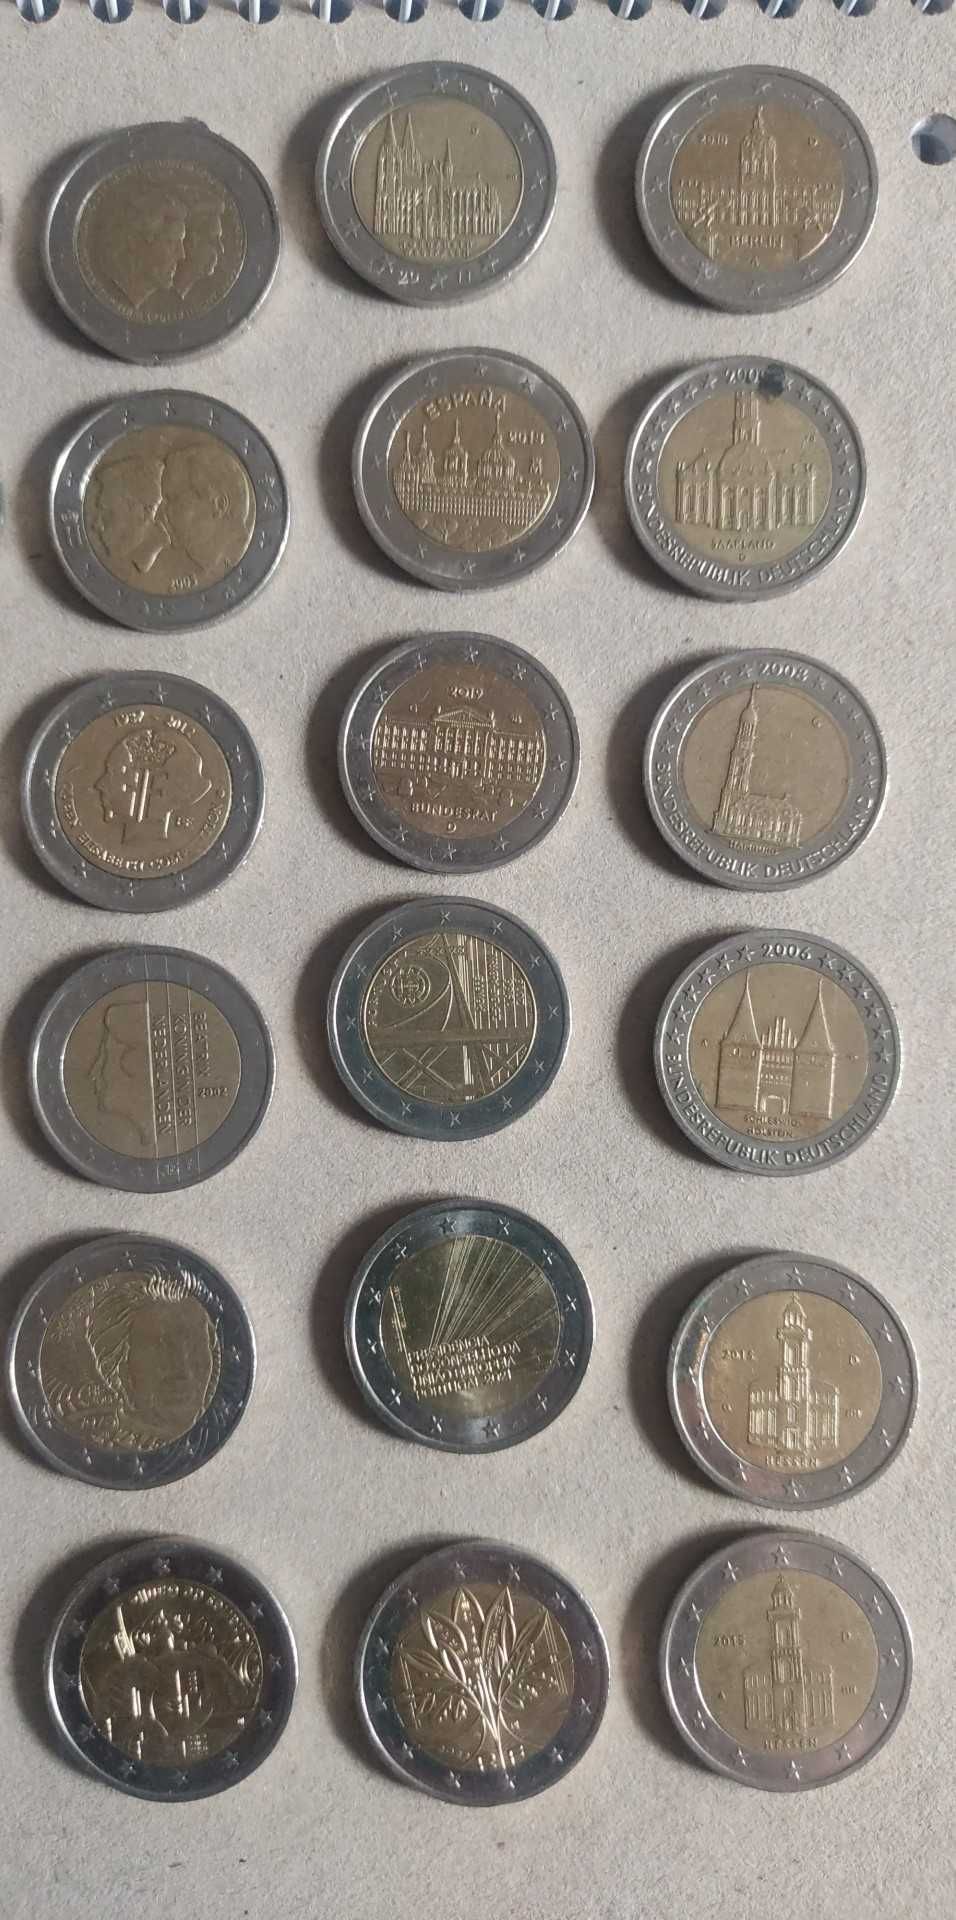 Moedas de dois euros todas diferentes